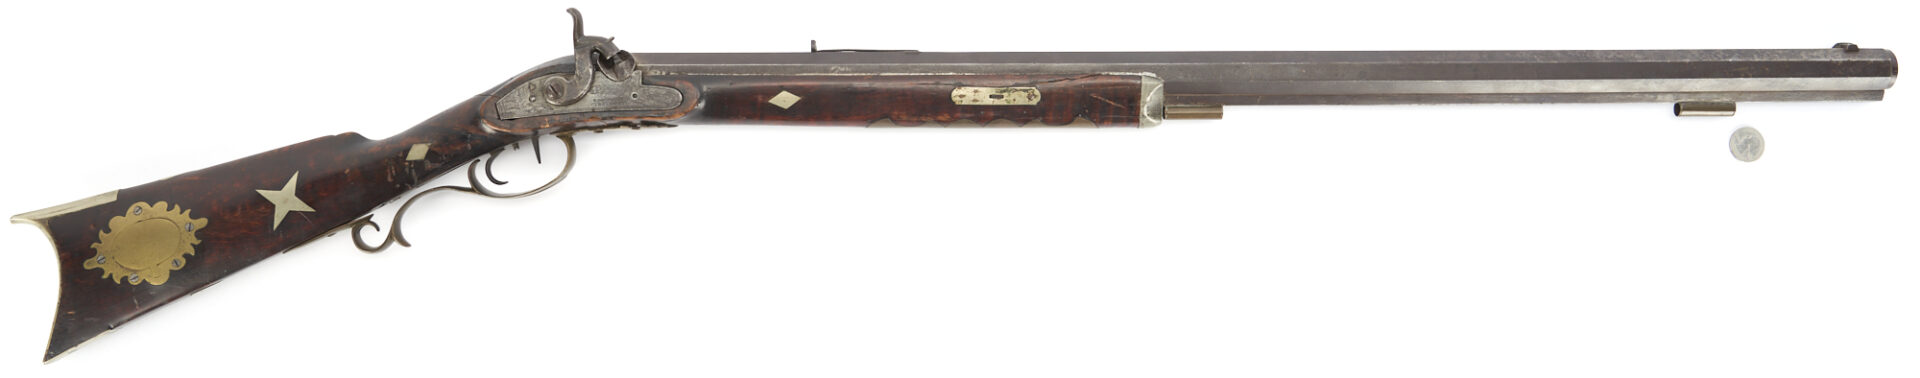 Lot 524: 19th C. Percussion Rifle; "T. Davidson & Co"., Cincinnati .45 cal; Walter Cline Collection